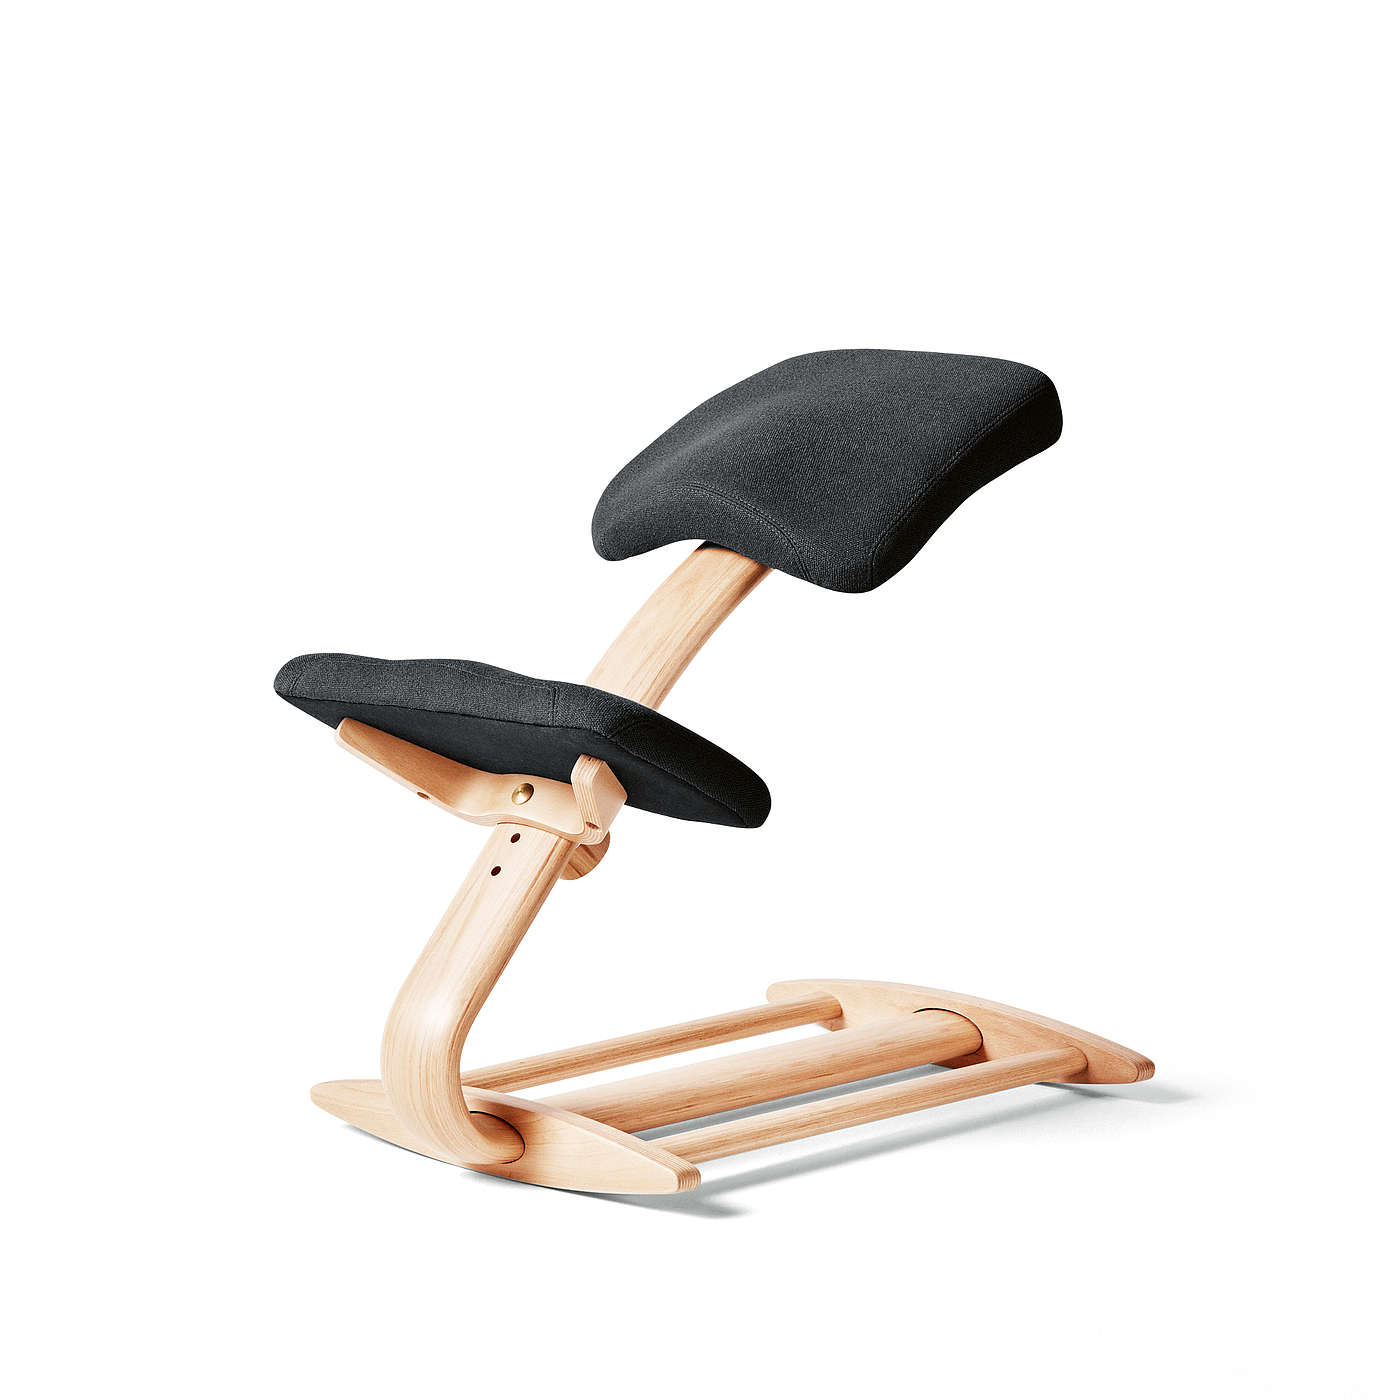 2020红点产品设计大奖，Fully Tic Toc Balans，榉木，椅子，跪椅，